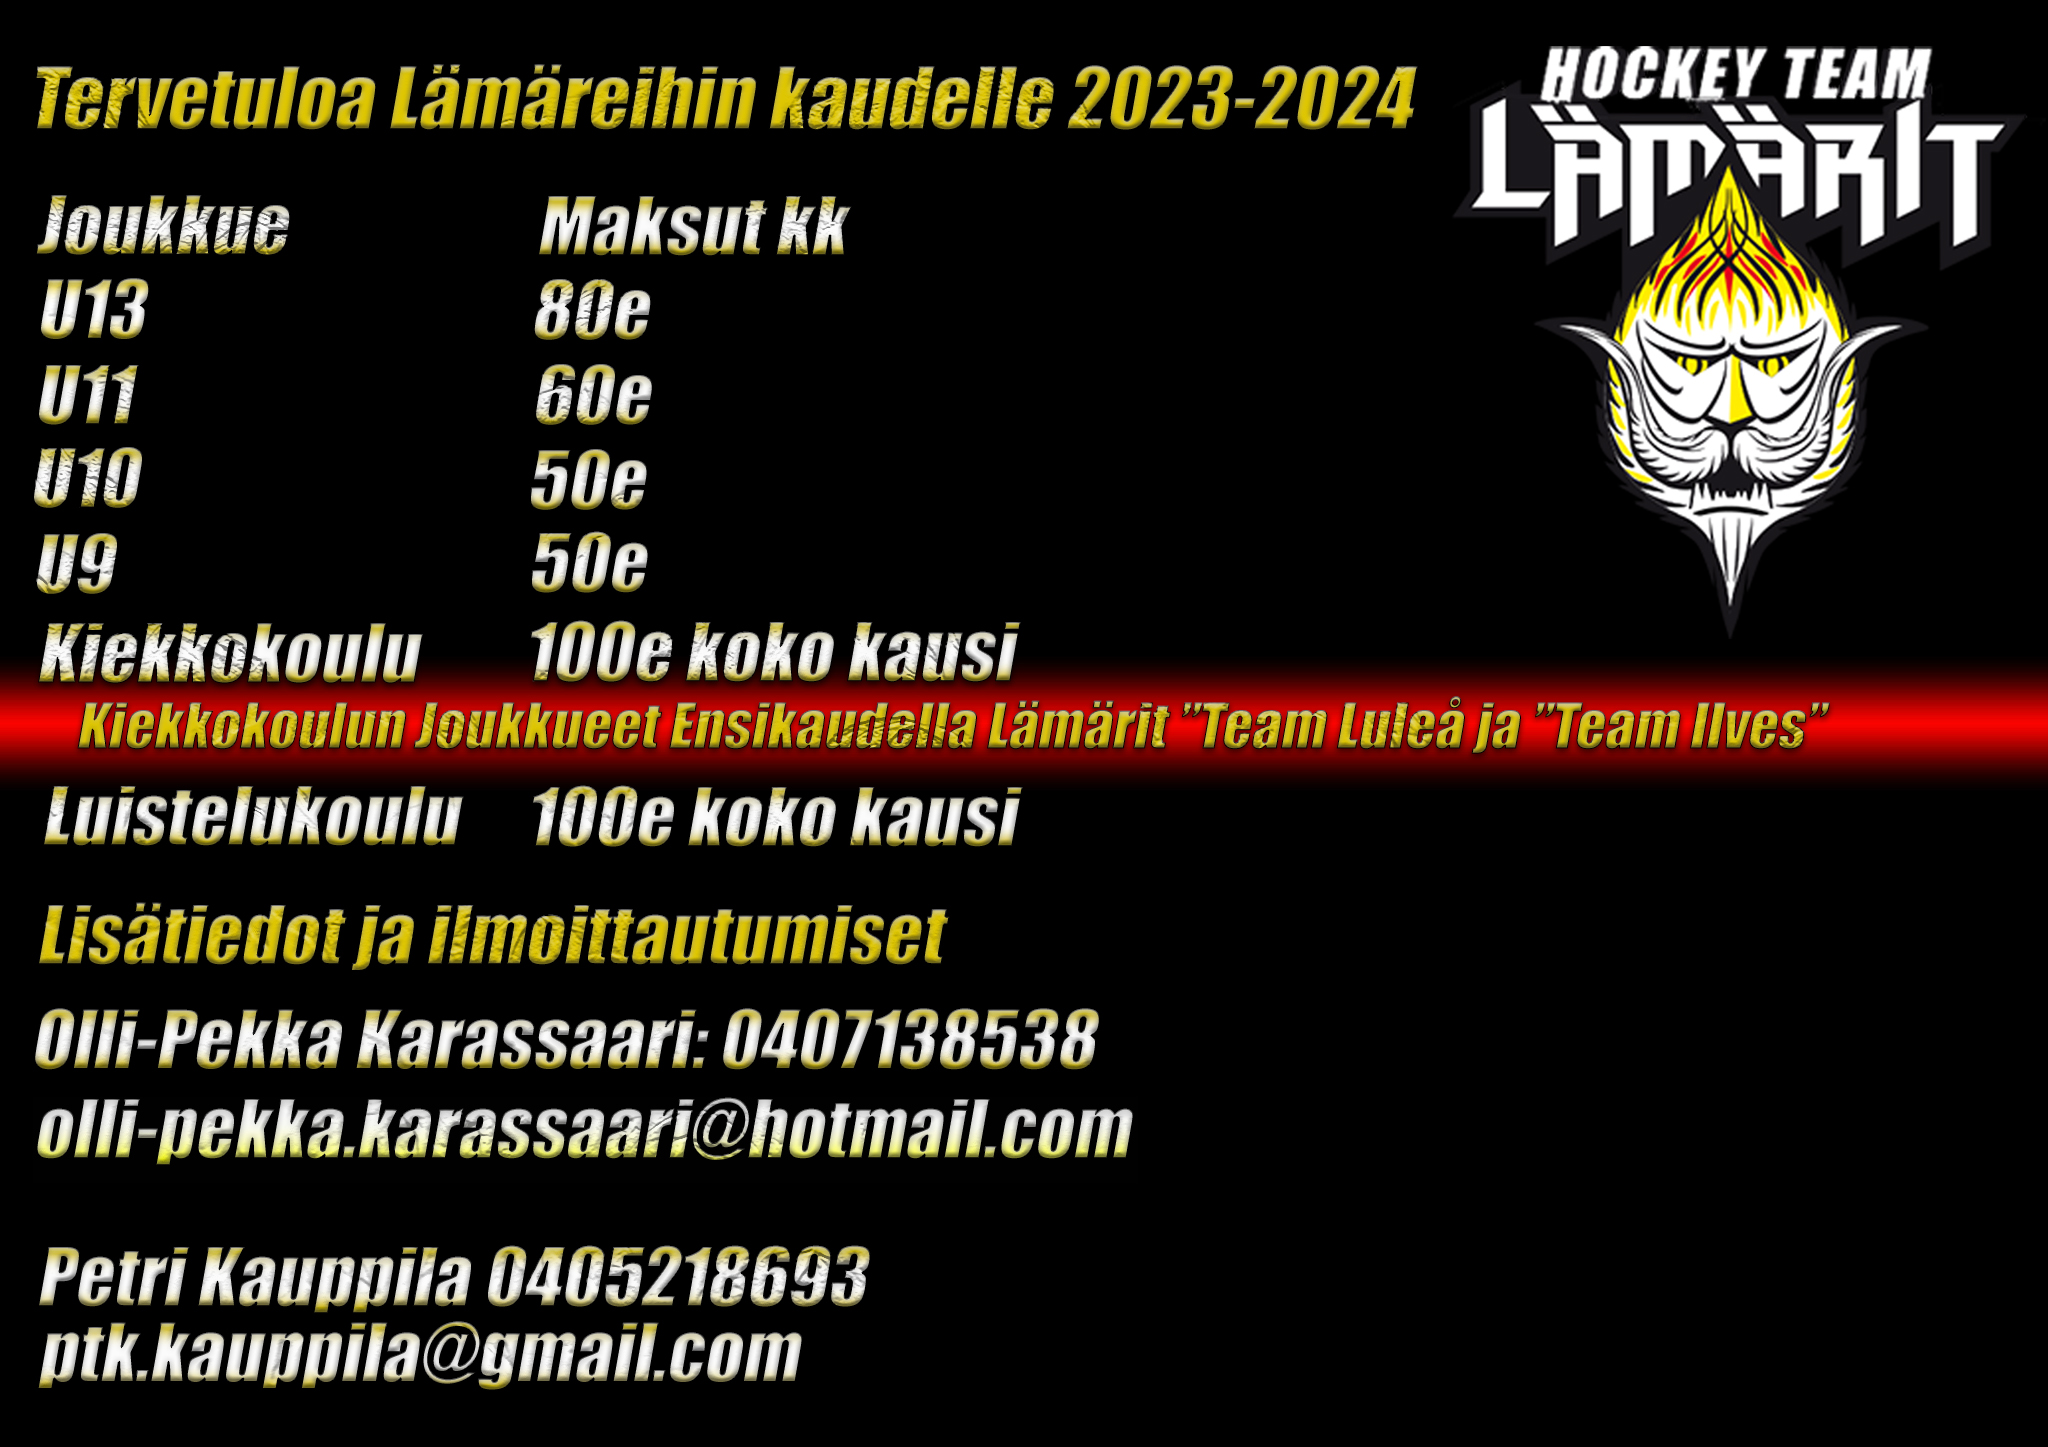 Featured image for “Lämärit Kausi 2023-2024”